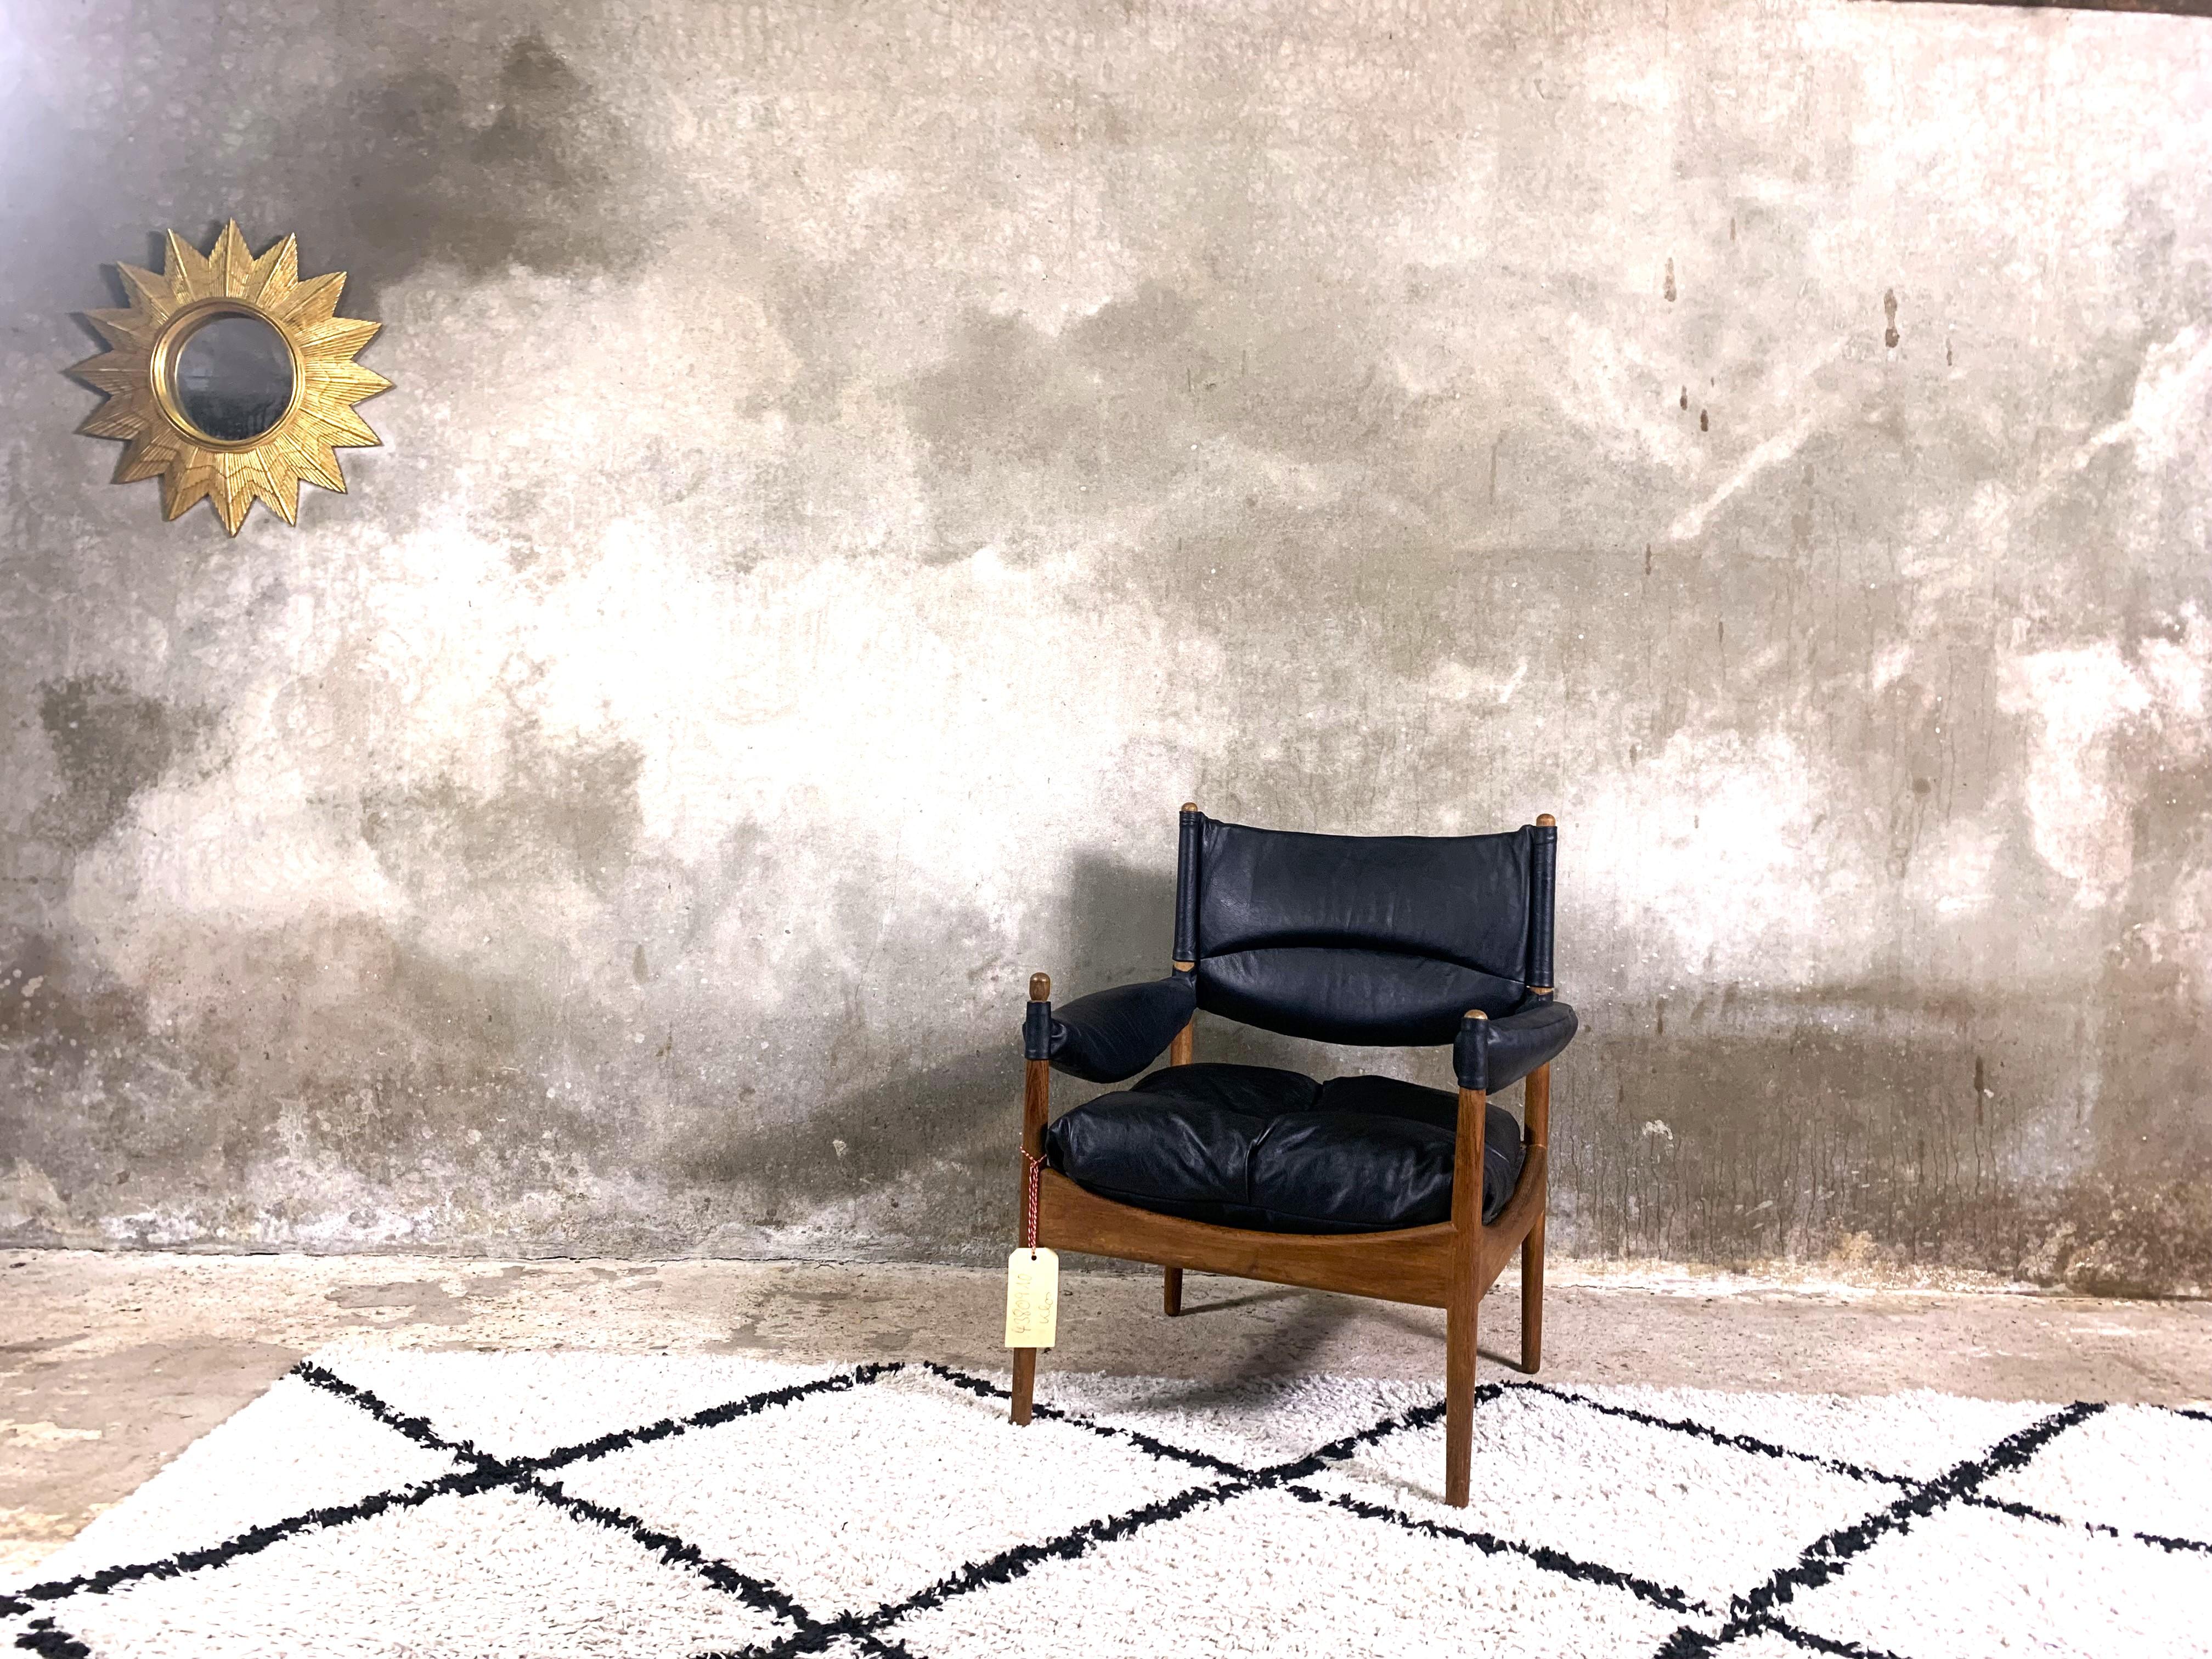 Un beau fauteuil de la série Modus, conçue par Kristian Vedel dans les années 1960. Fabriqué en teck massif. Coussins en cuir naturel et délicat, garnis de plumes d'oie, ce qui rend le fauteuil exceptionnellement confortable. Un merveilleux exemple